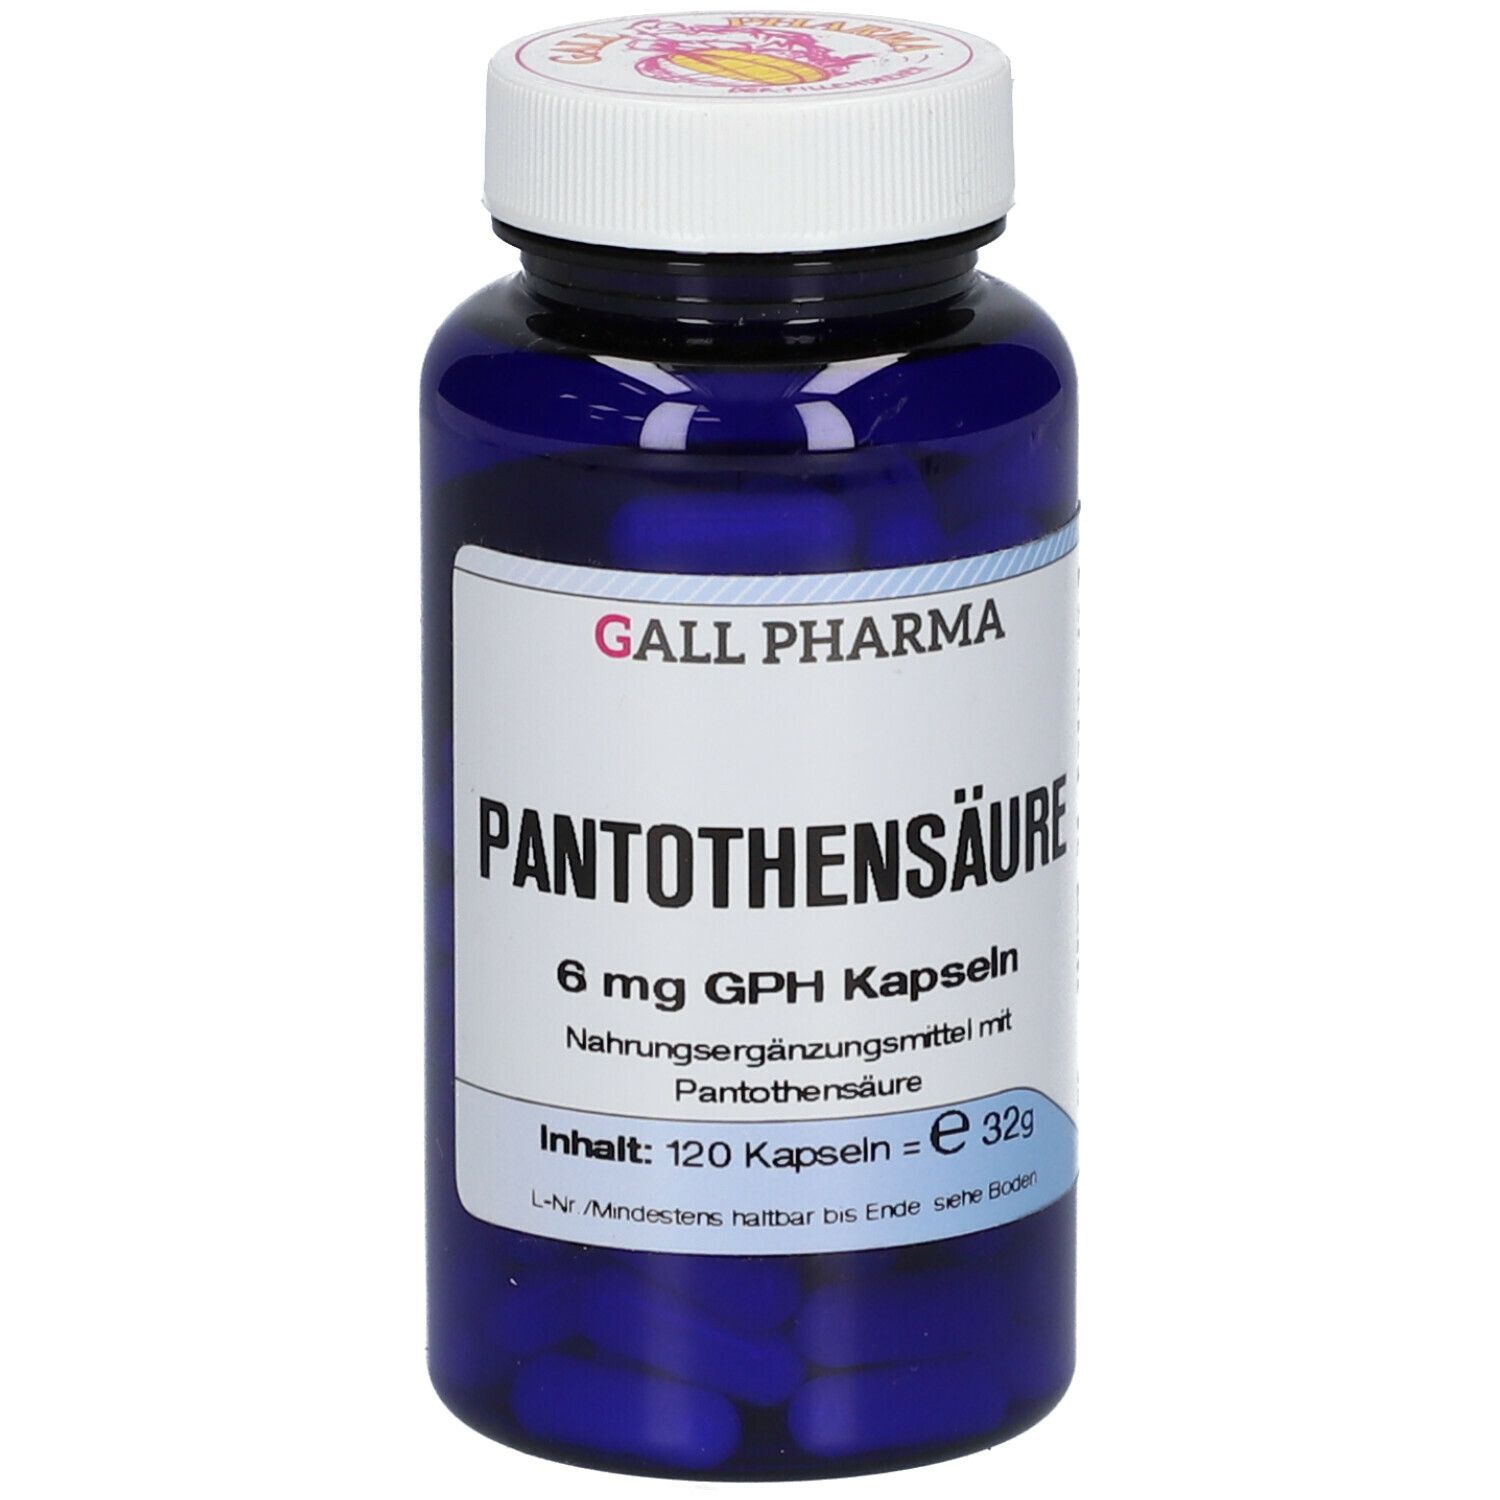 GALL PHARMA Pantothensäure 6 mg GPH Kapseln